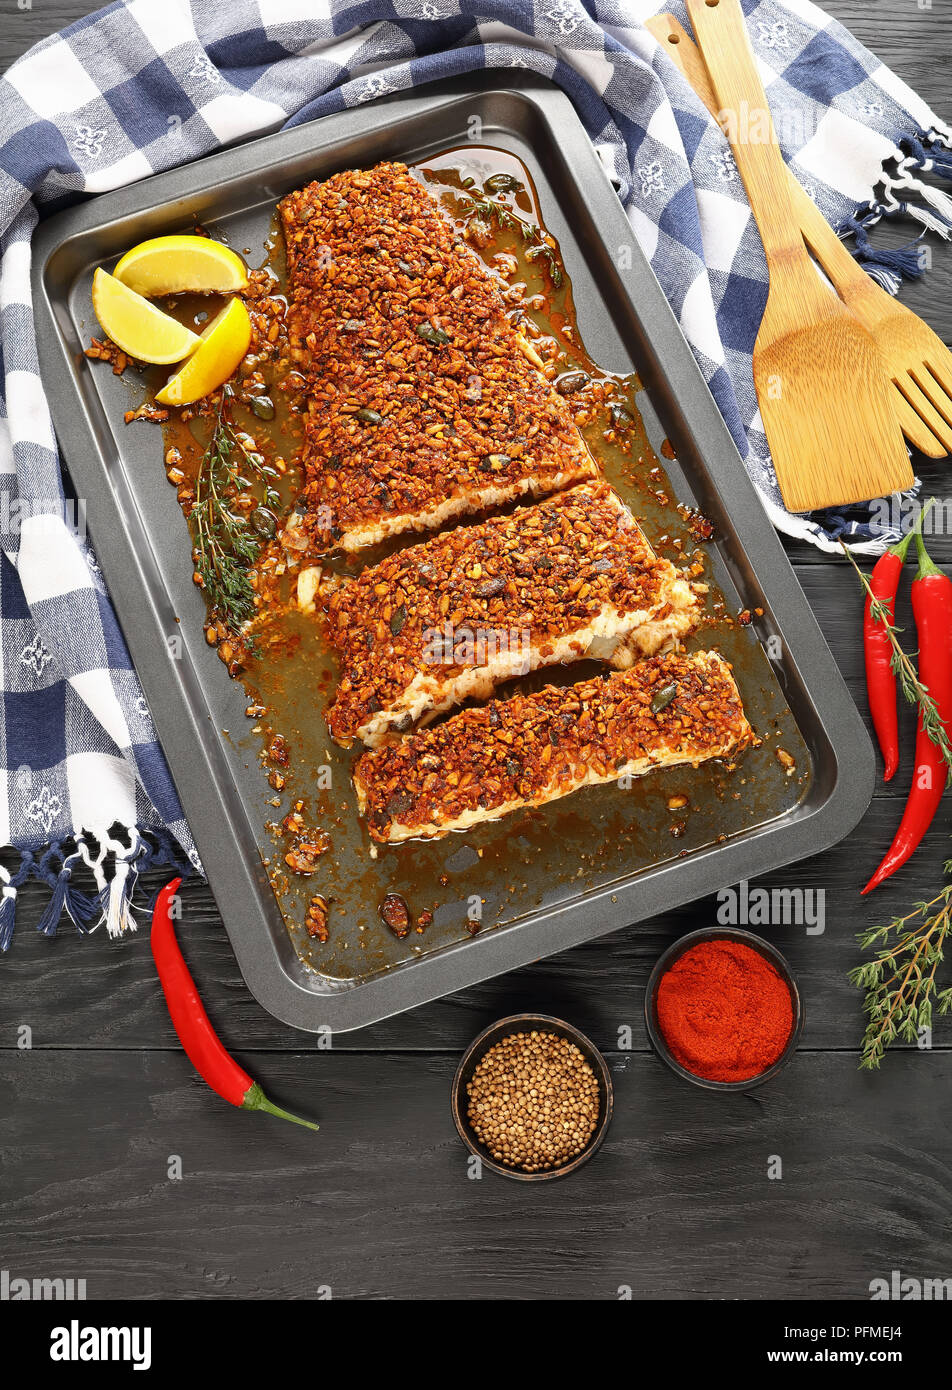 Kürbis, Sonnenblumen und Chili - Verkrusteten Fischfilet auf Backblech mit Küchentuch, Spatel und Zutaten auf Holztisch, vertikale Ansicht her Stockfoto